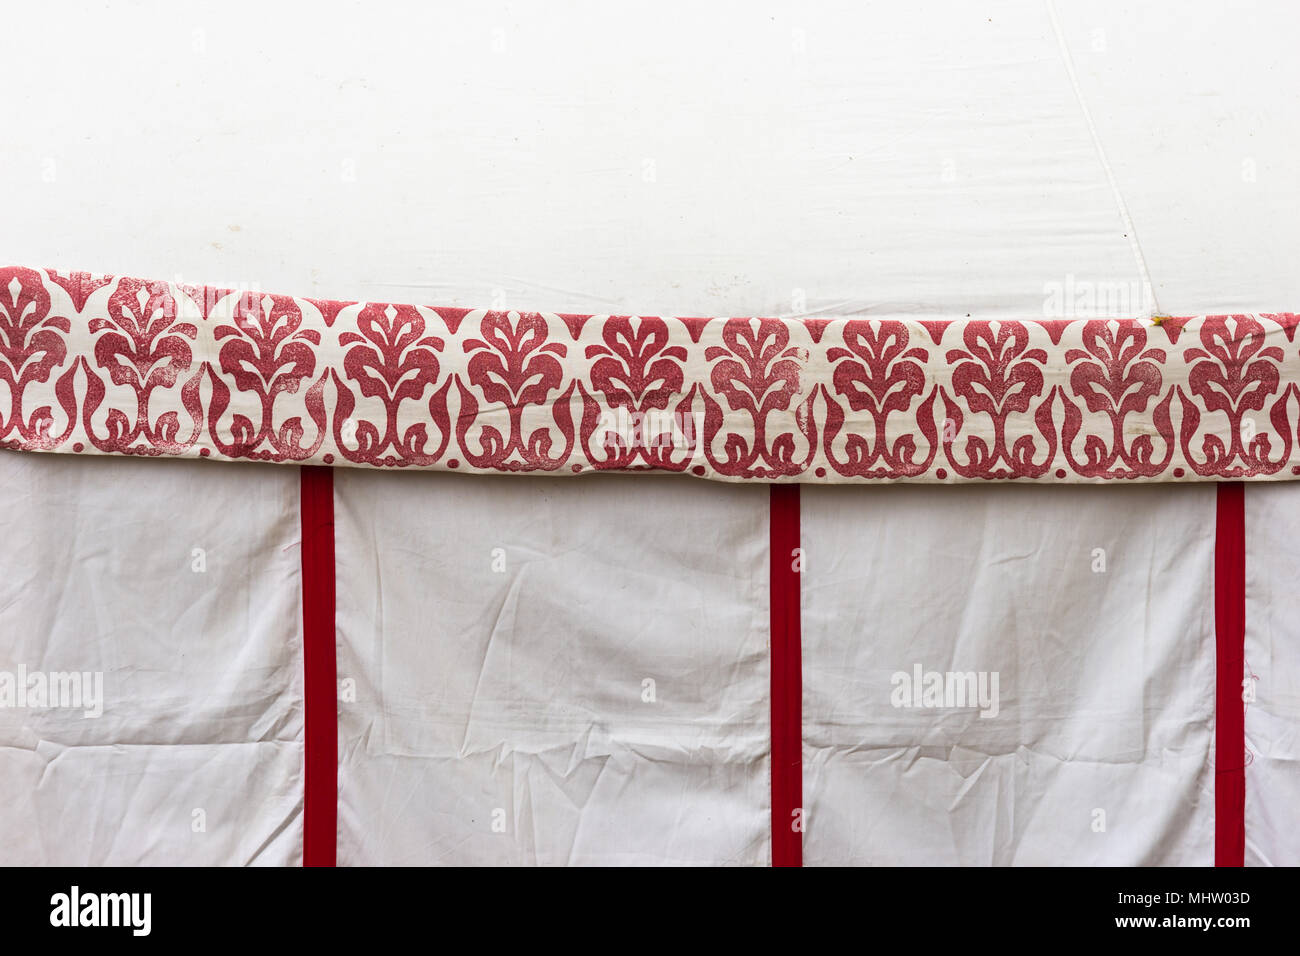 Détail d'une tente médiévale faite de toile et décorée d'un ornement de couleur rouge Banque D'Images